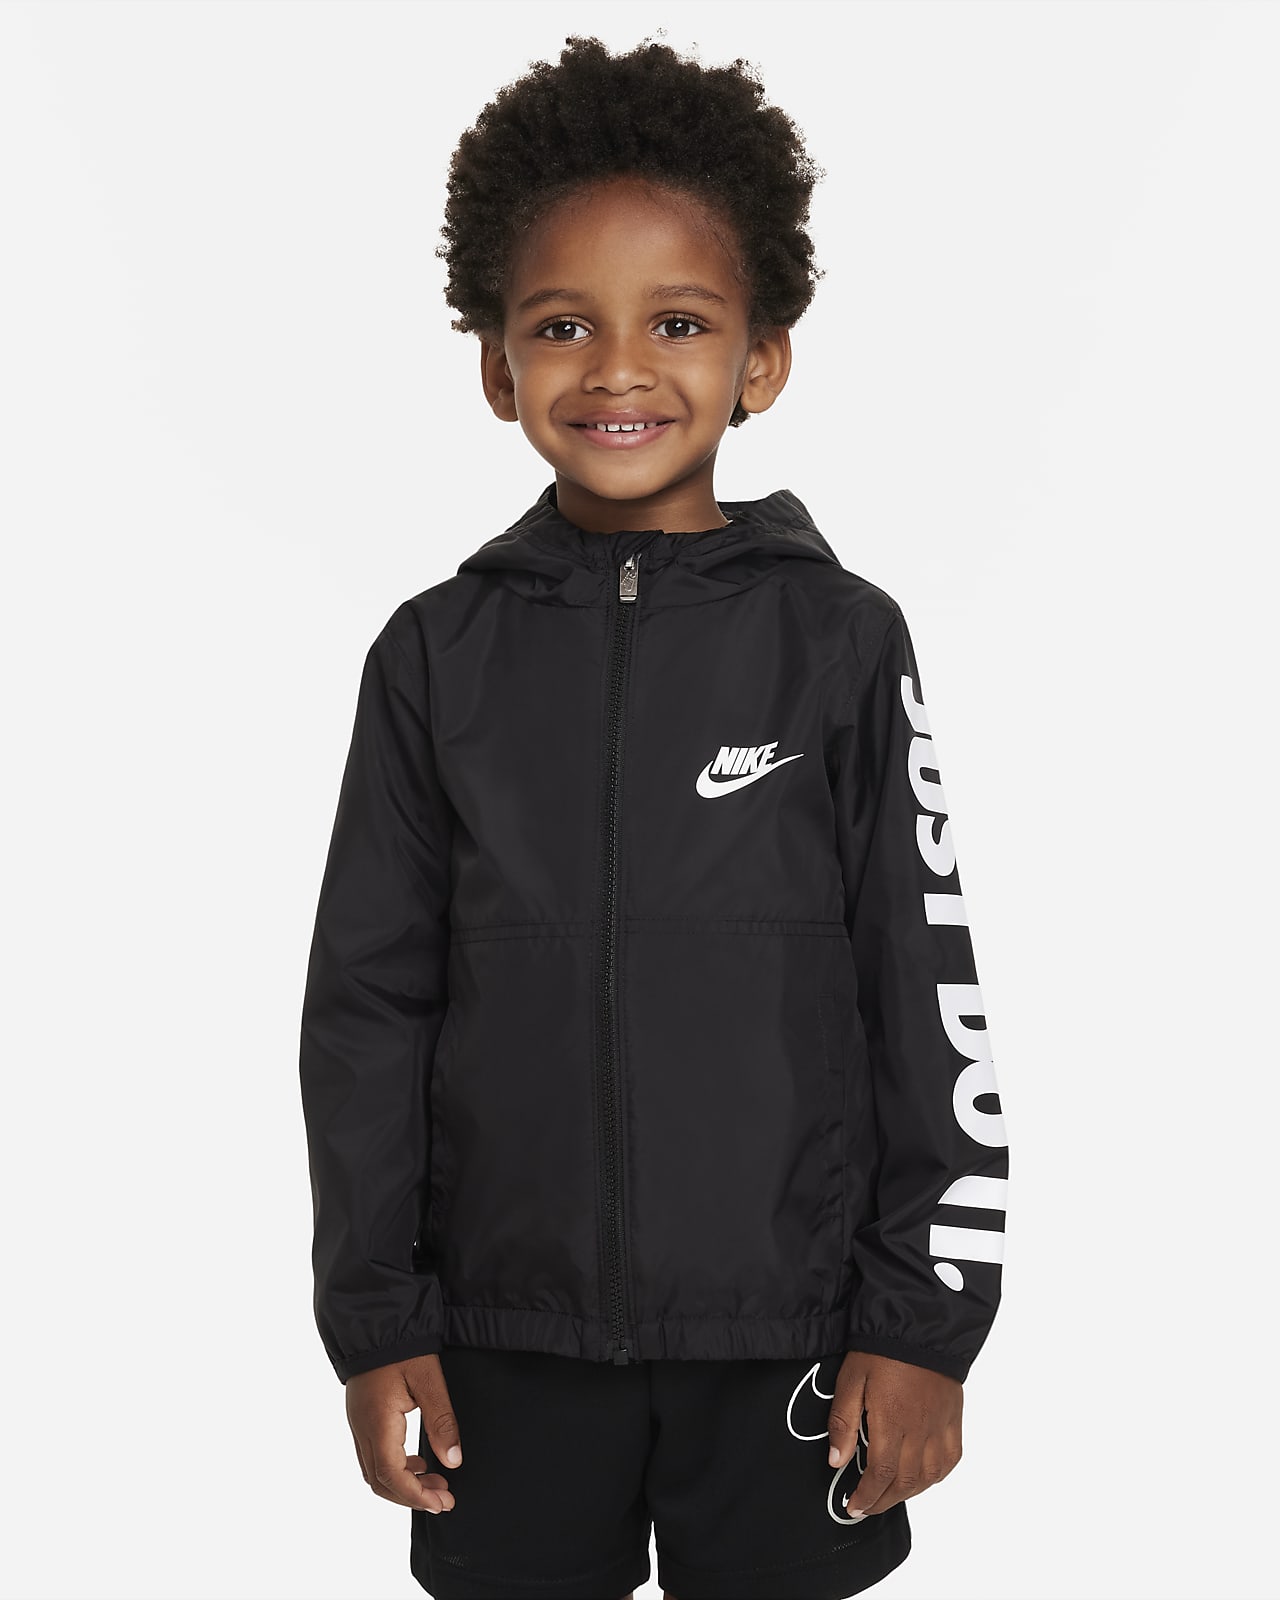 Nike Little Kids' Jacket